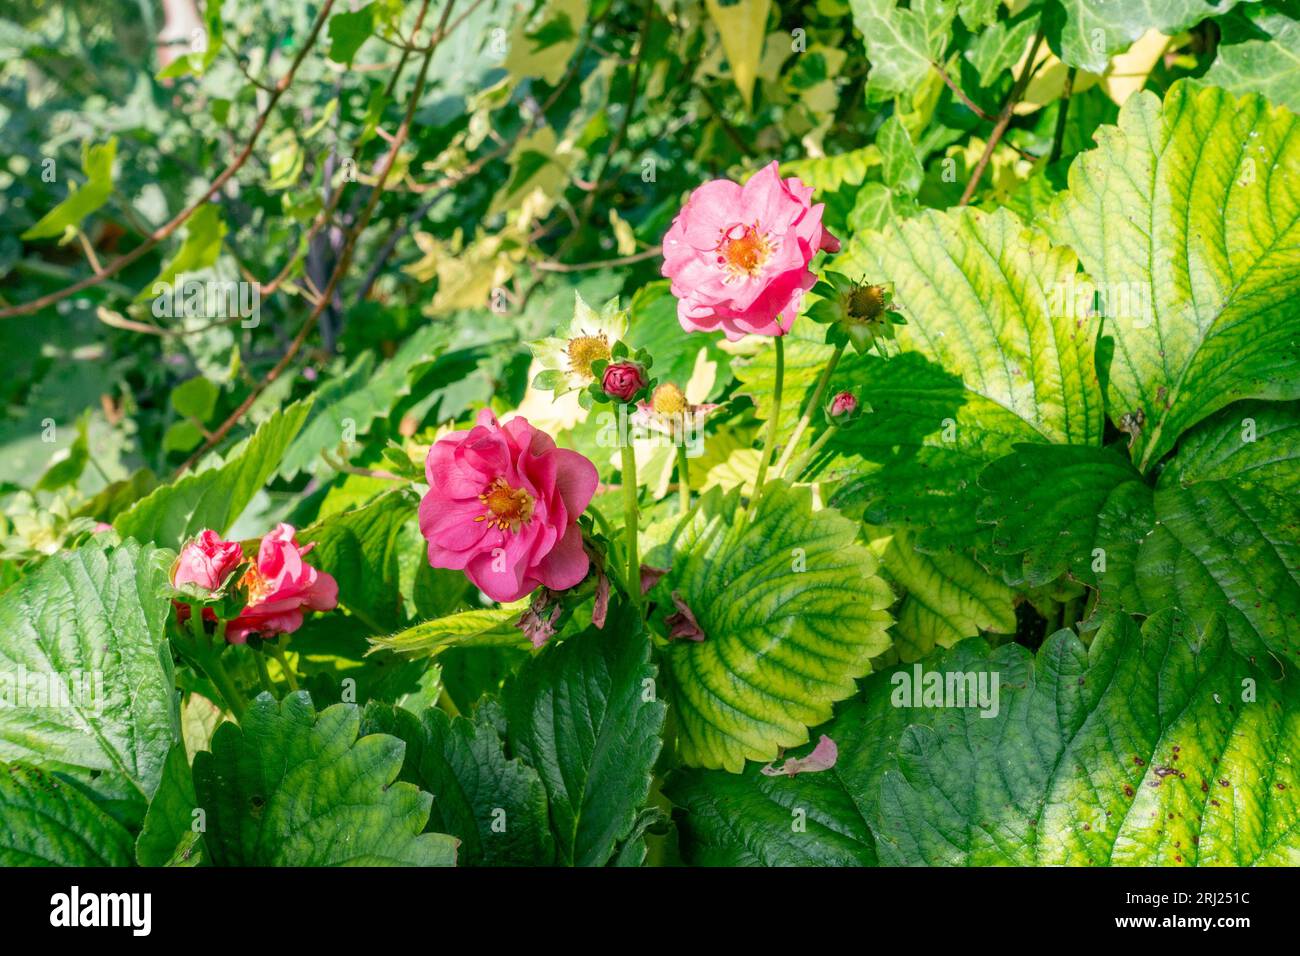 La fragola "Summer Breeze Cherry" cresce e fiorisce in un giardino residenziale con fiori rosa. Foto Stock